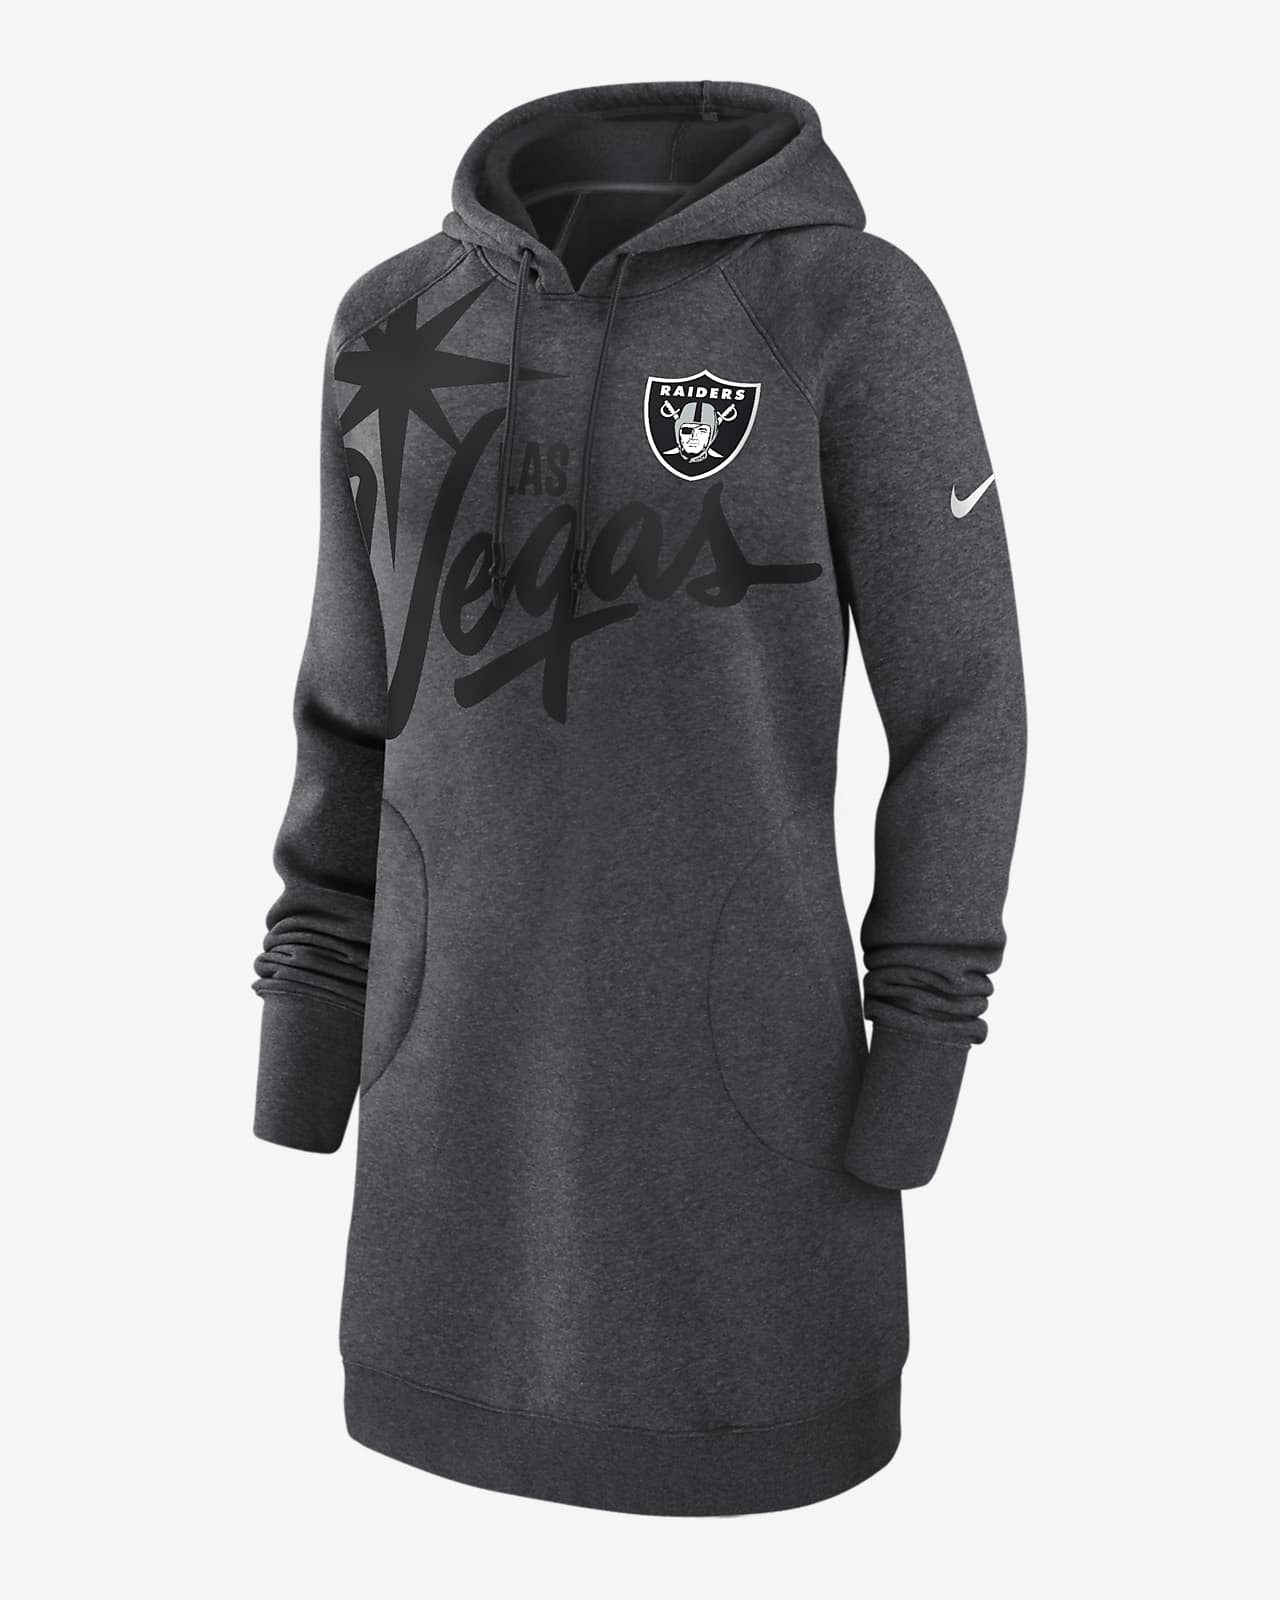 Nike Logo (NFL Las Vegas Raiders) Women's Oversized Pullover Hoodie